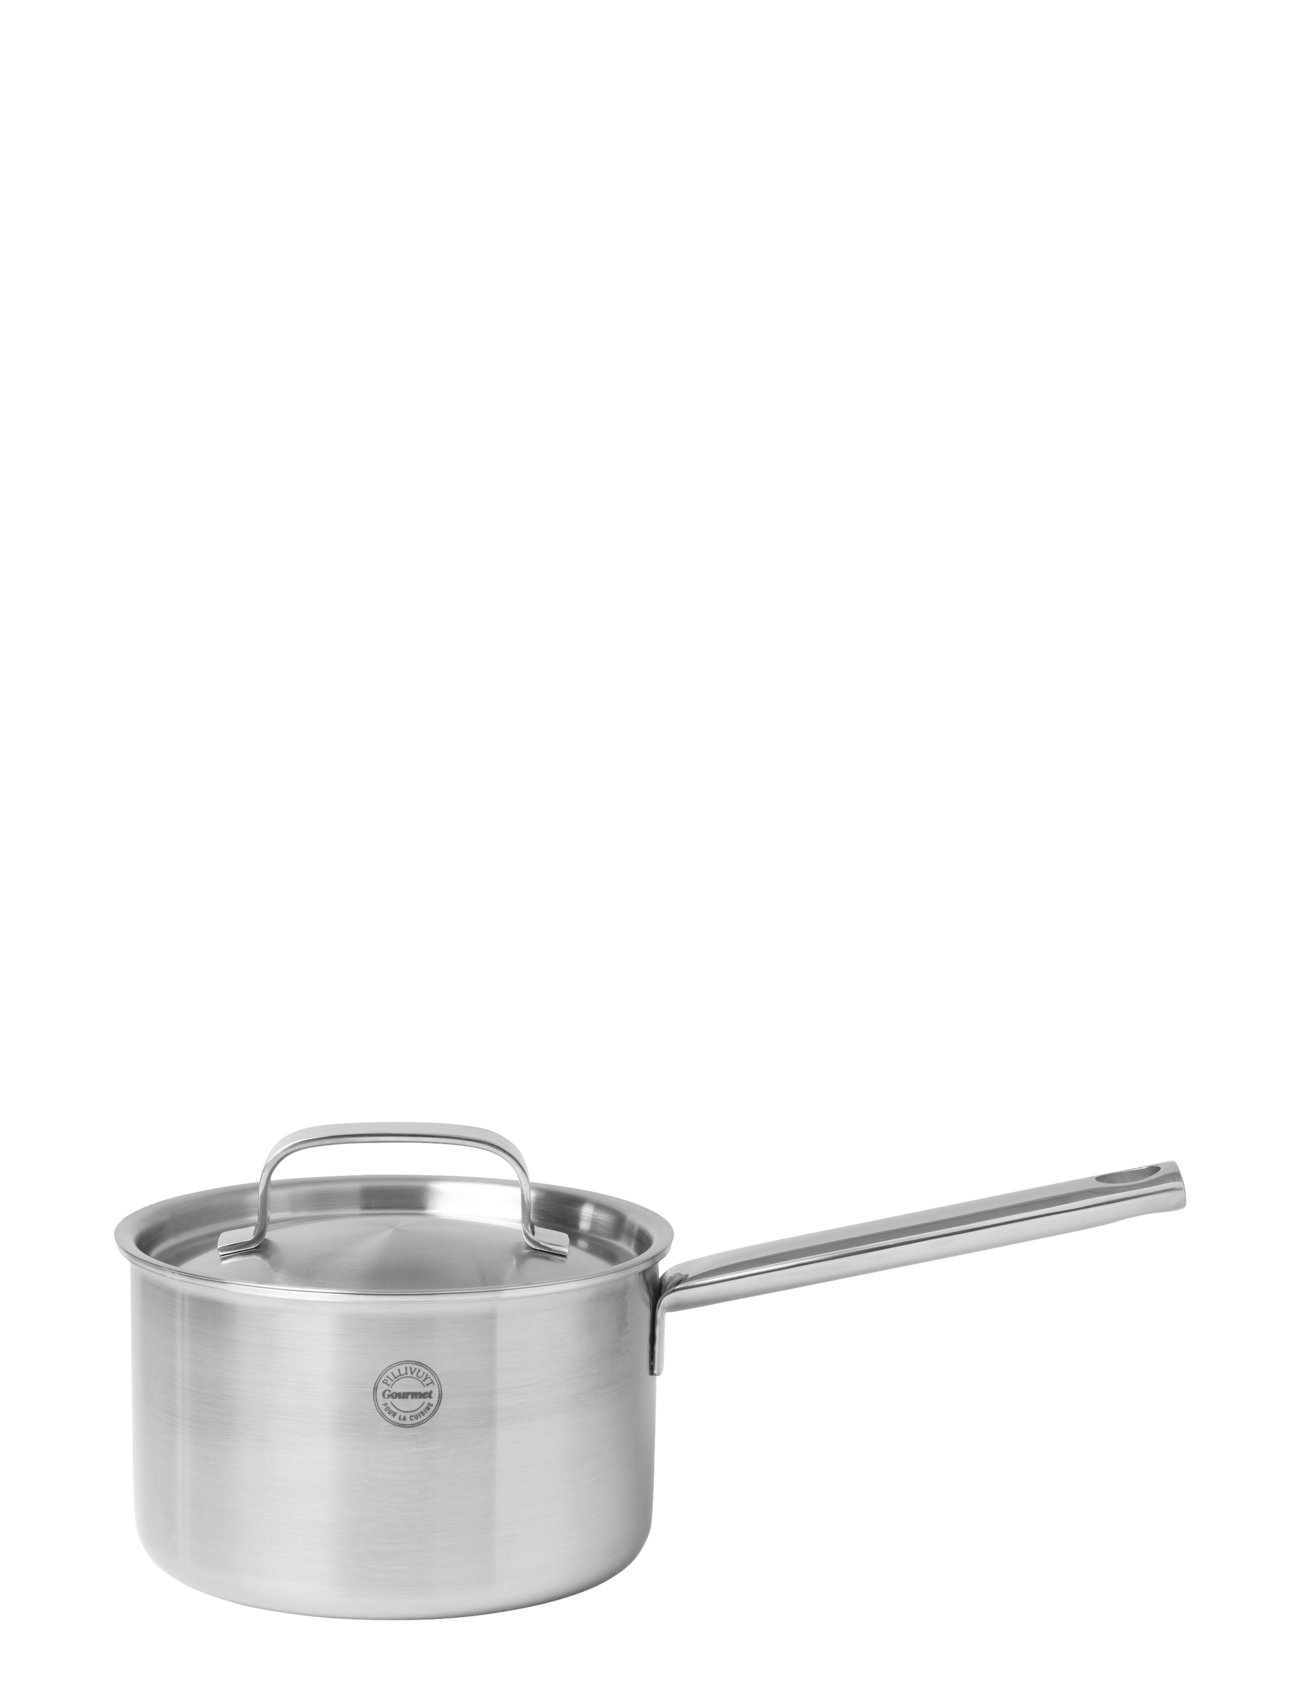 Kasserolle Med Låg Somme Home Kitchen Pots & Pans Saucepans Silver Pillivuyt Gourmet